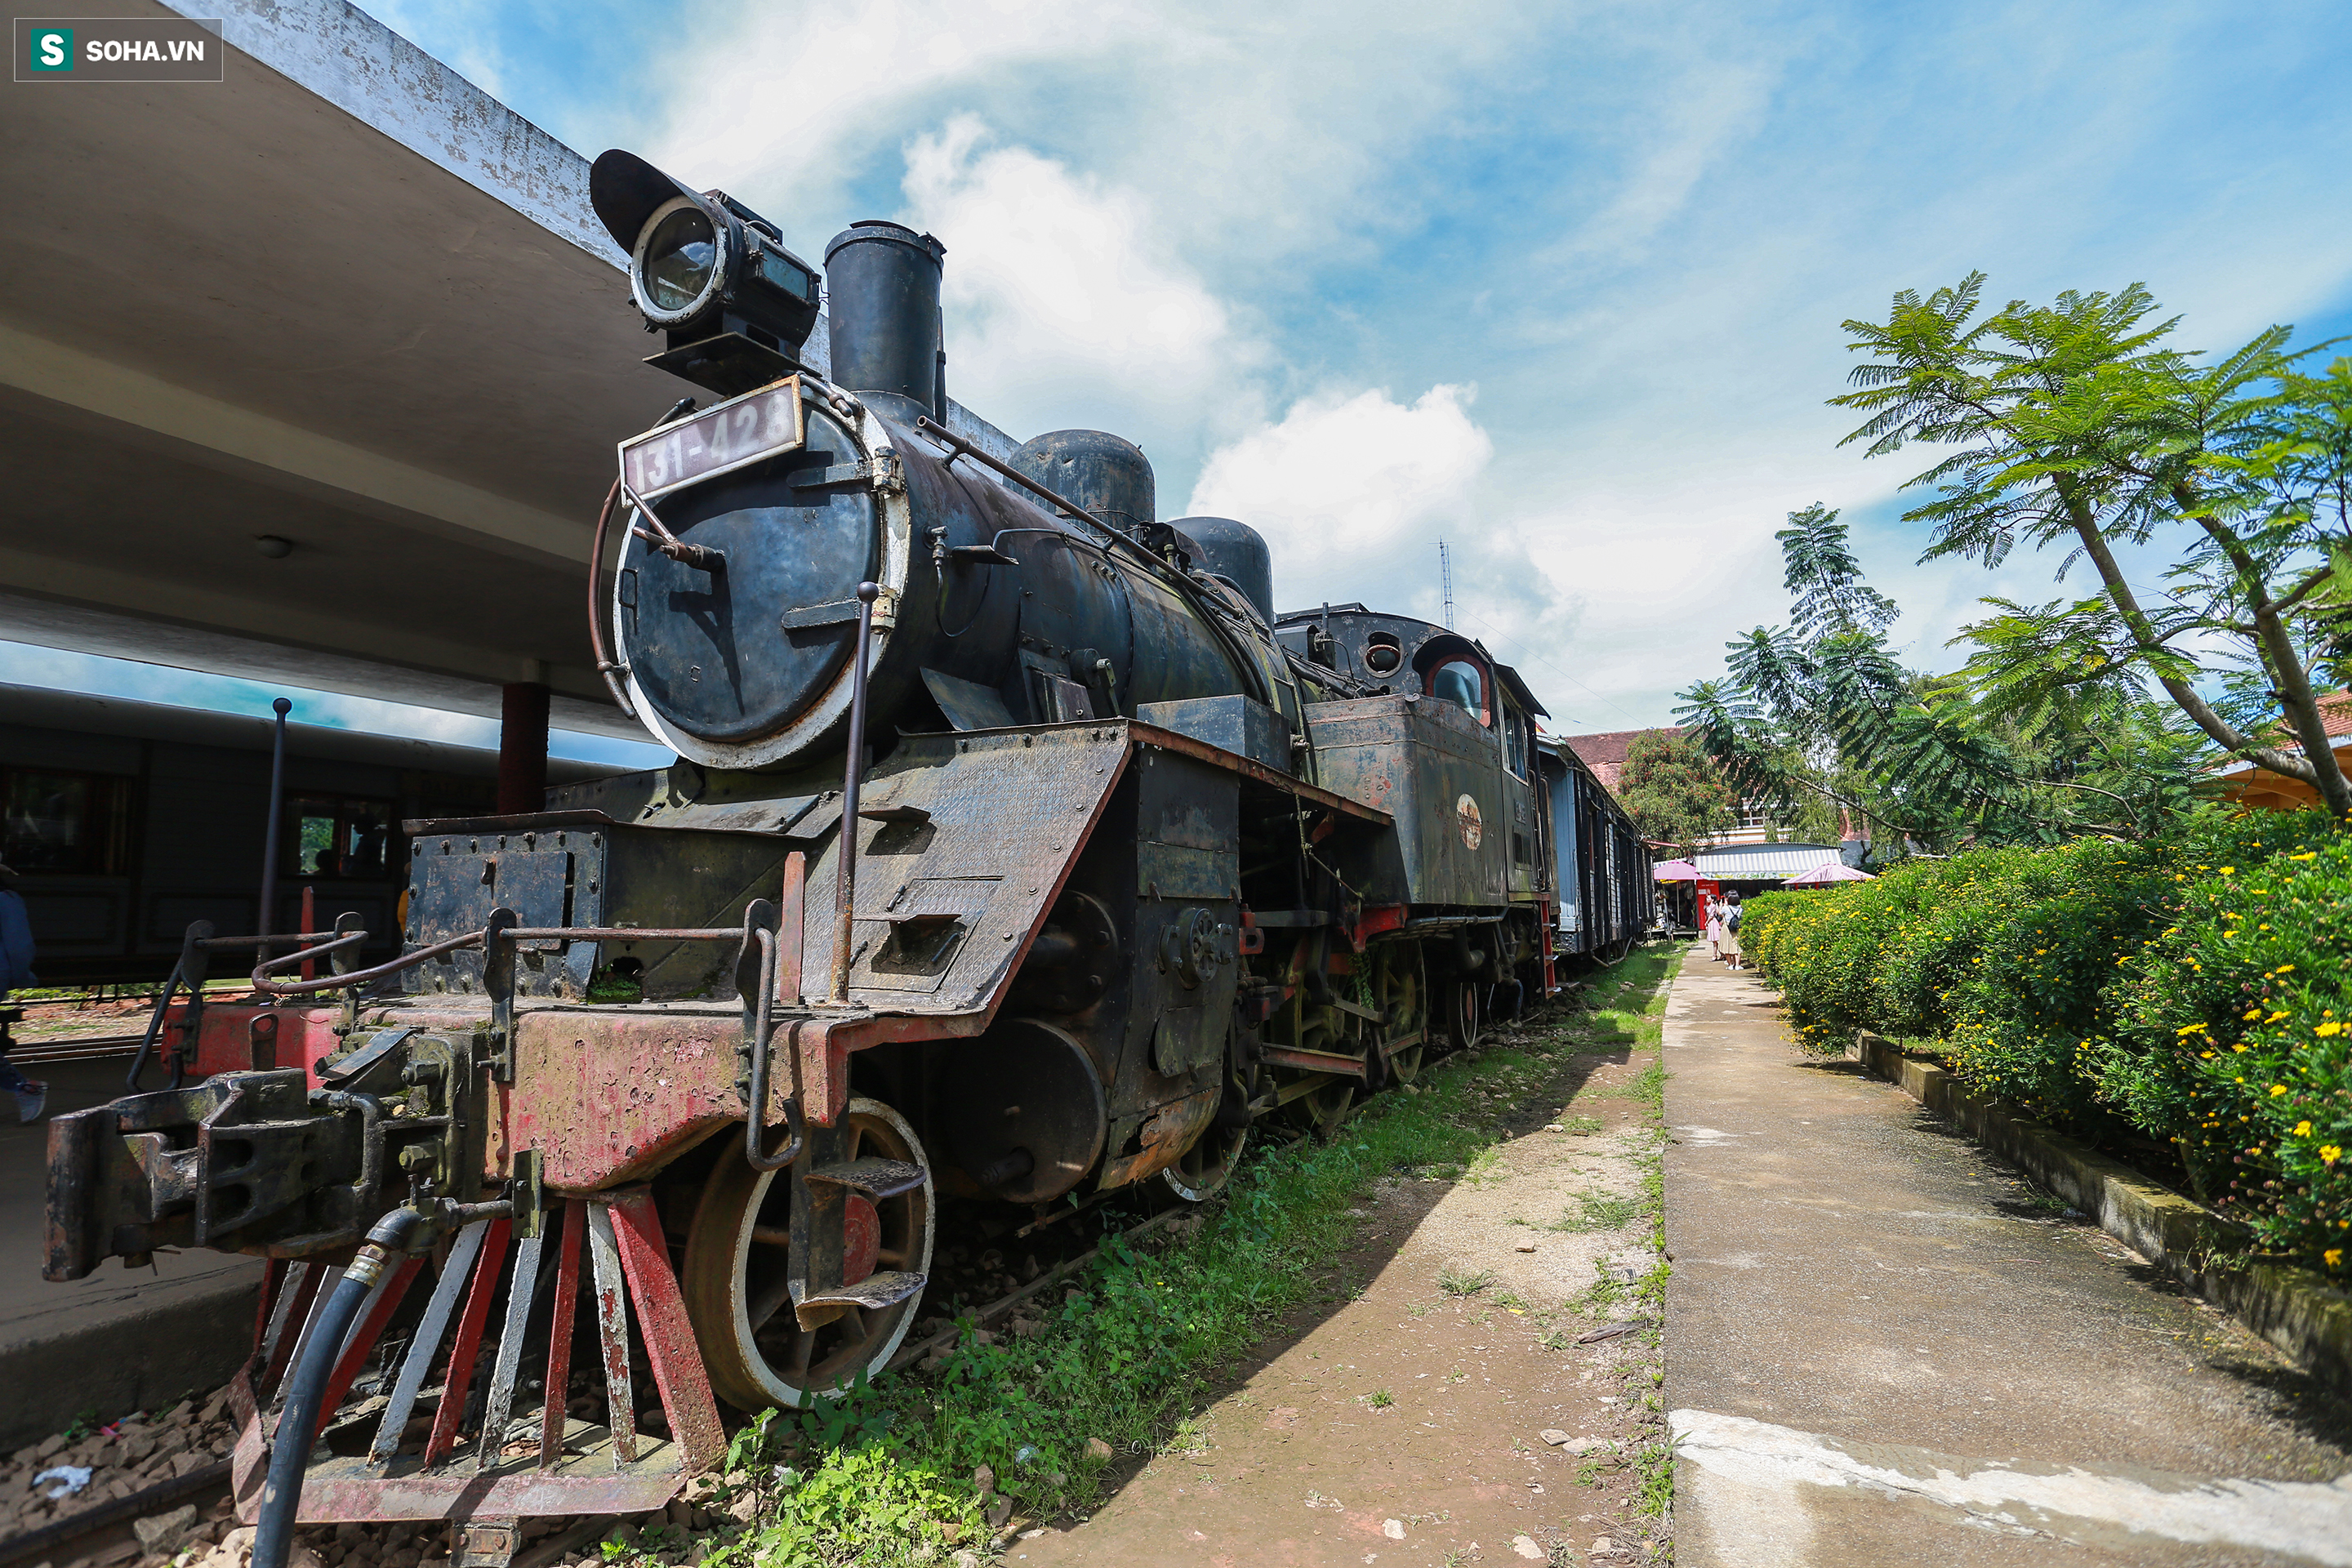 Vẻ đẹp cổ kính của ga tàu hoả gần 100 tuổi ở Đà Lạt nhìn từ trên cao - Ảnh 8.